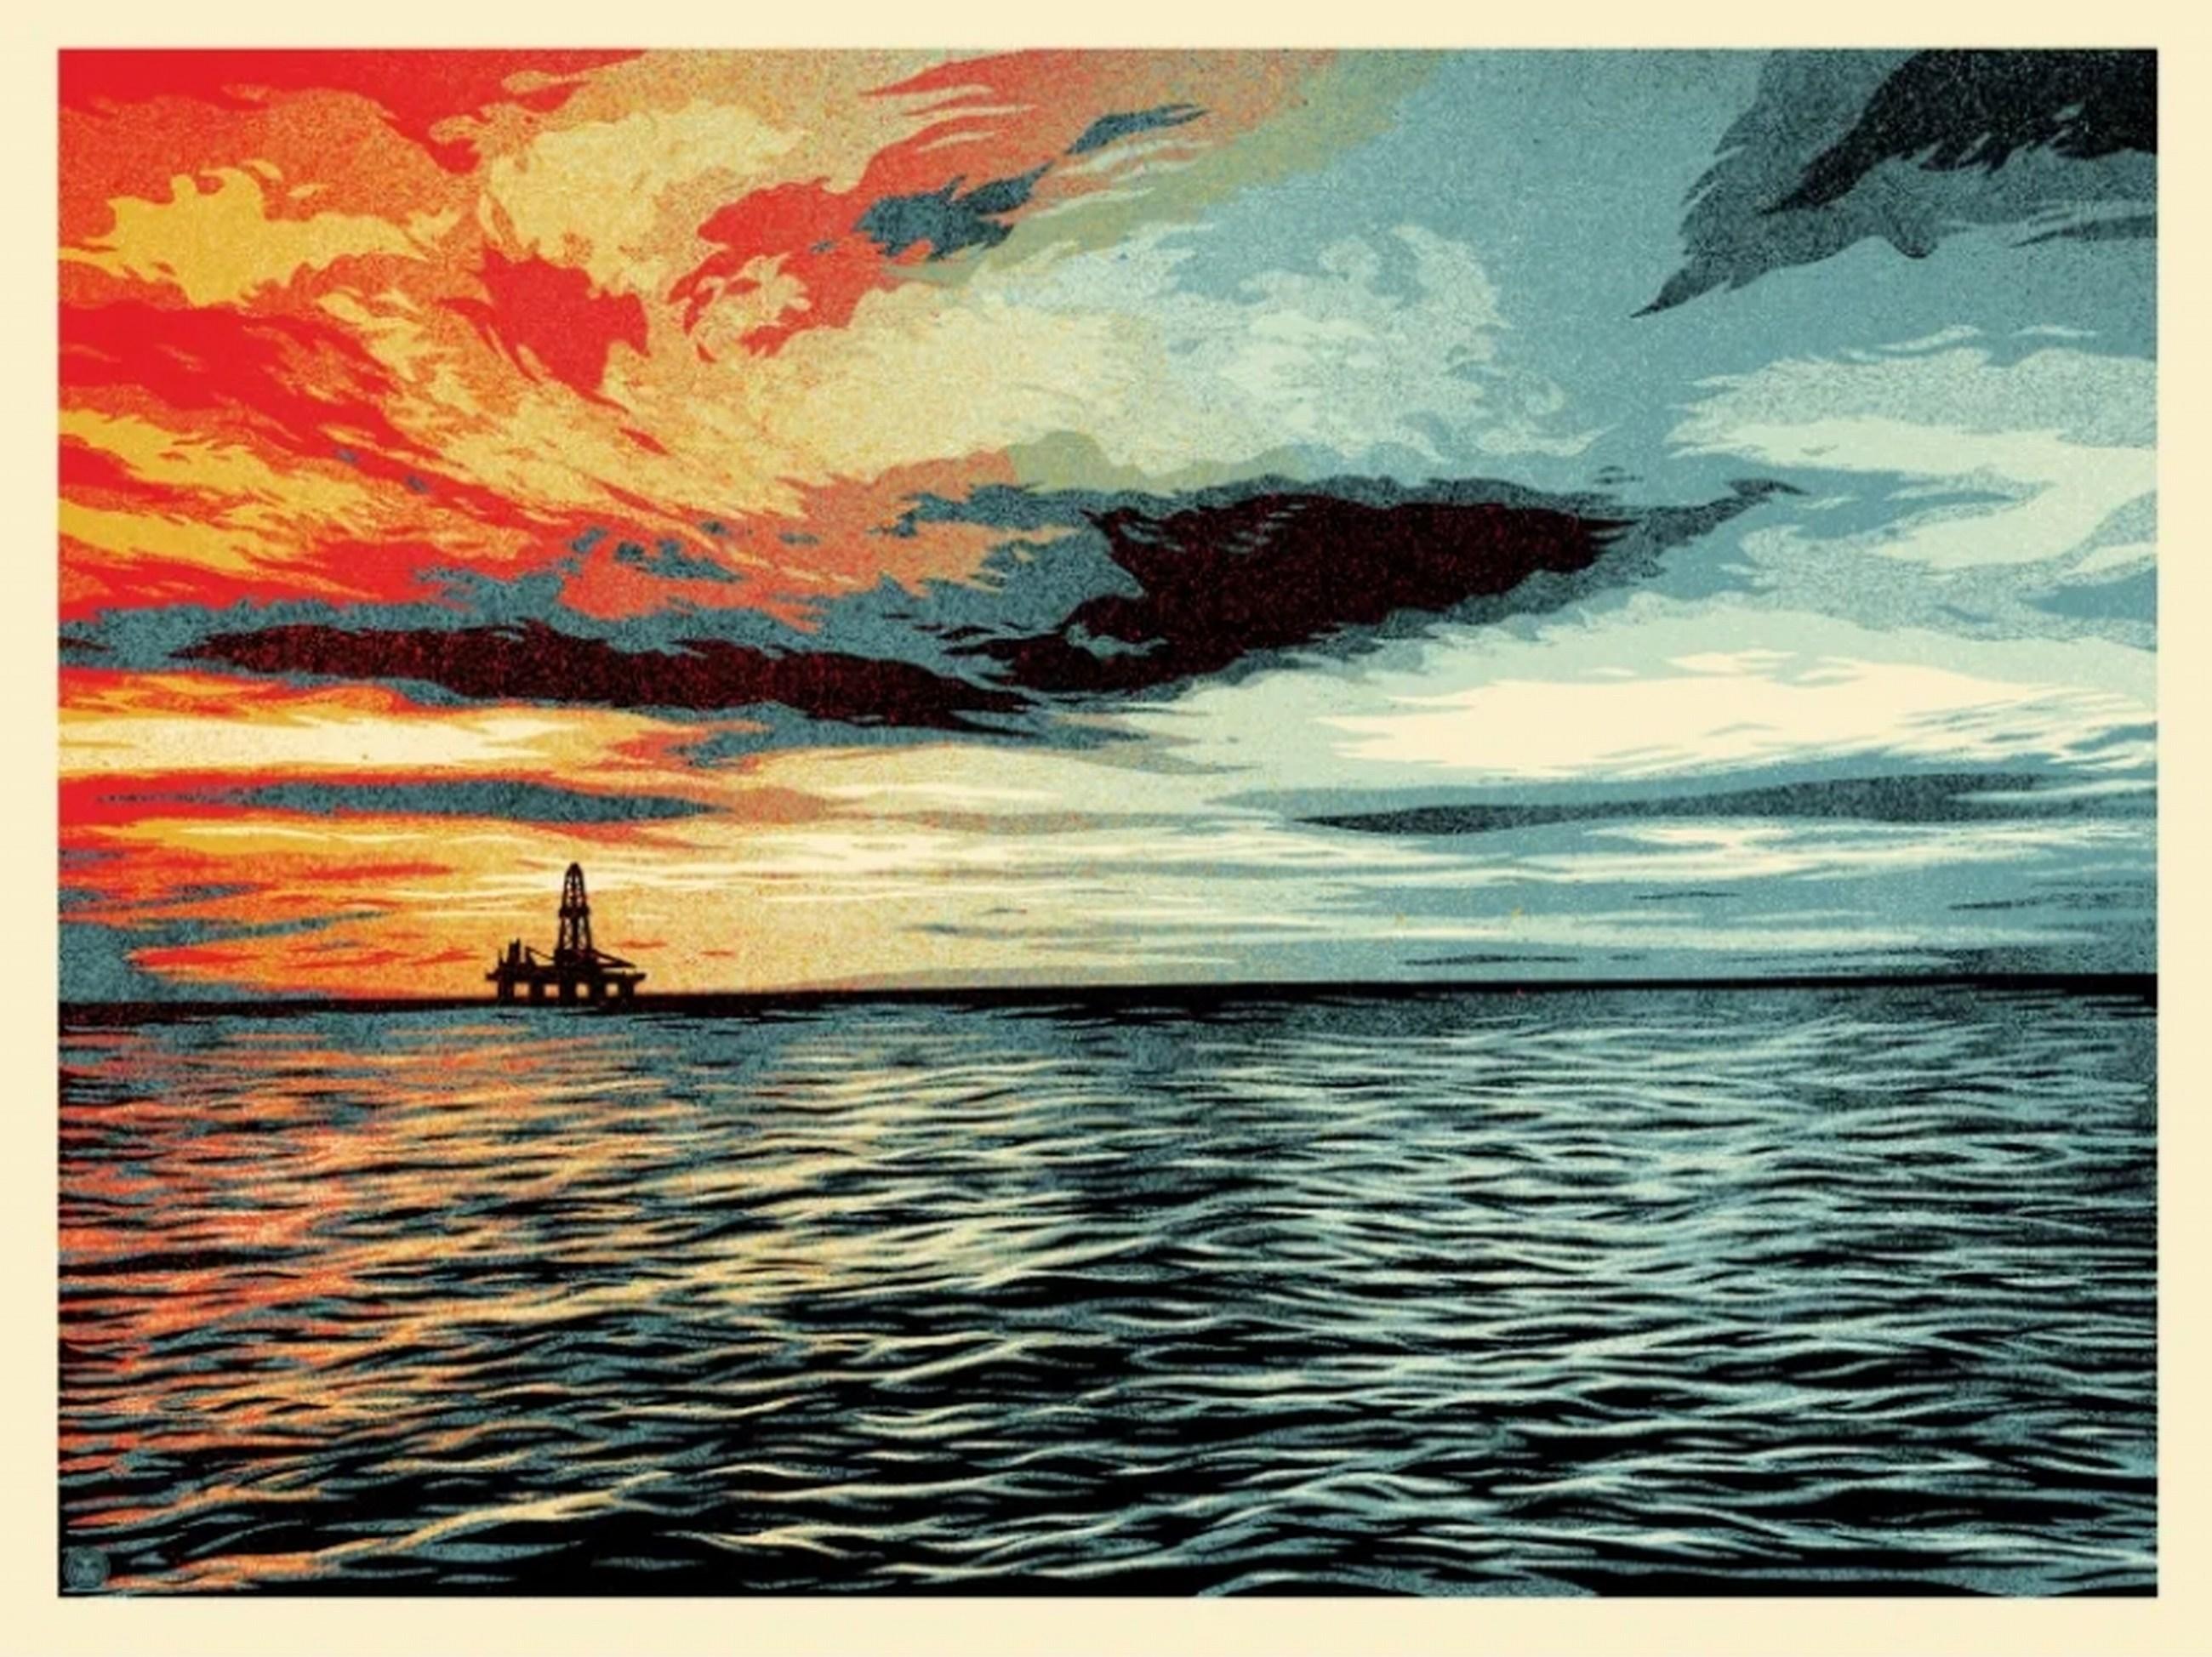 Sonnenuntergang als Herbstbegriff (Oil Spill, Santa Barbara, Umweltschutz) – Print von Shepard Fairey